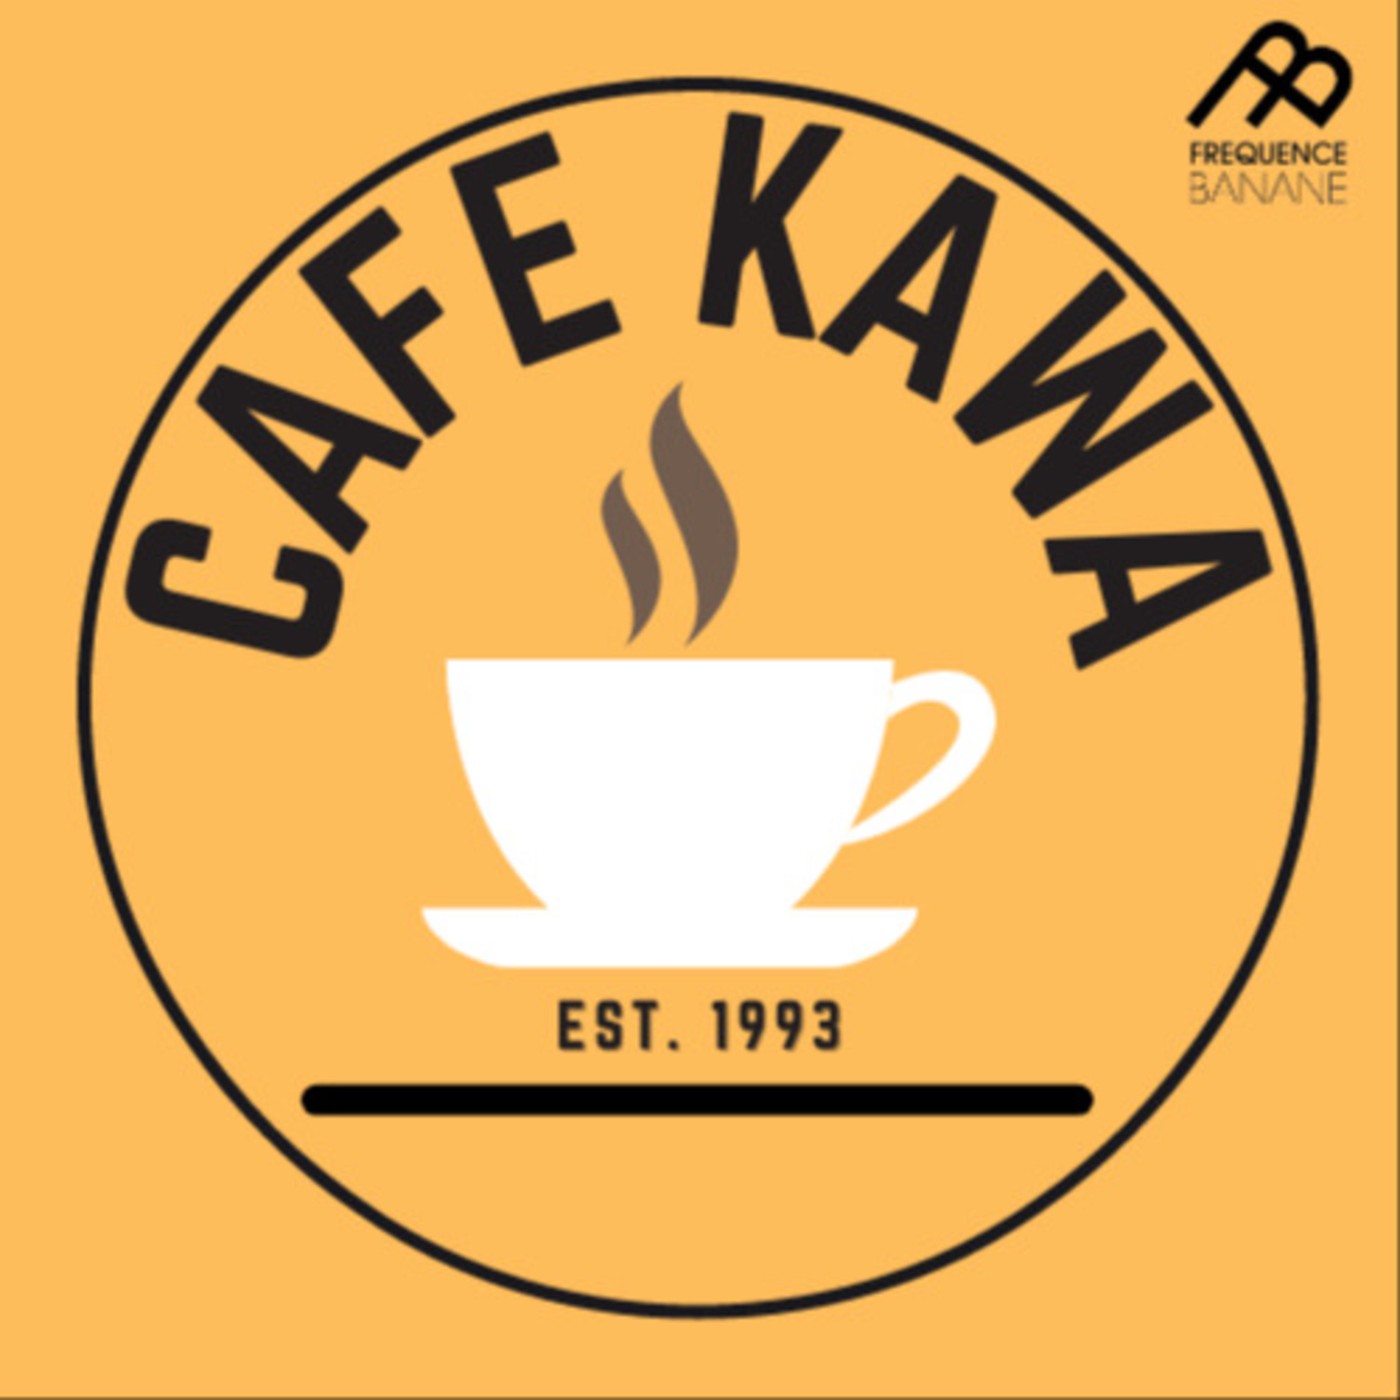 Café Kawa des Banales - 22.02.21